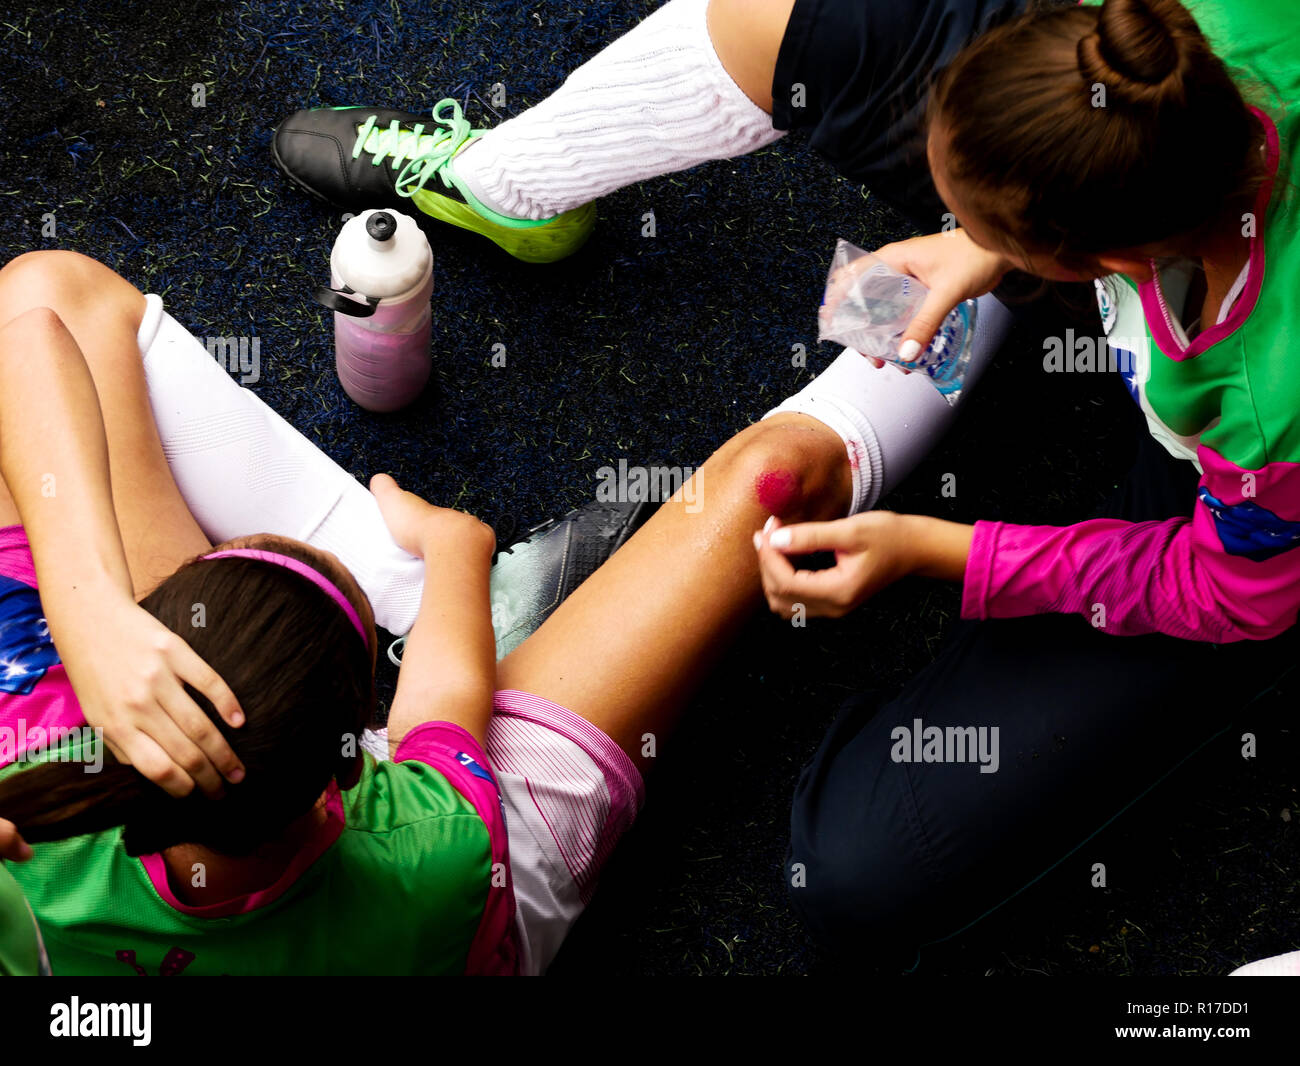 Ein torwart Mädchen mit lackierten Nägel Reinigung a Wounded Knee team Mate mit Wasser während eines Fußball-Spiels auf einem Kunstrasen Feld. Stockfoto